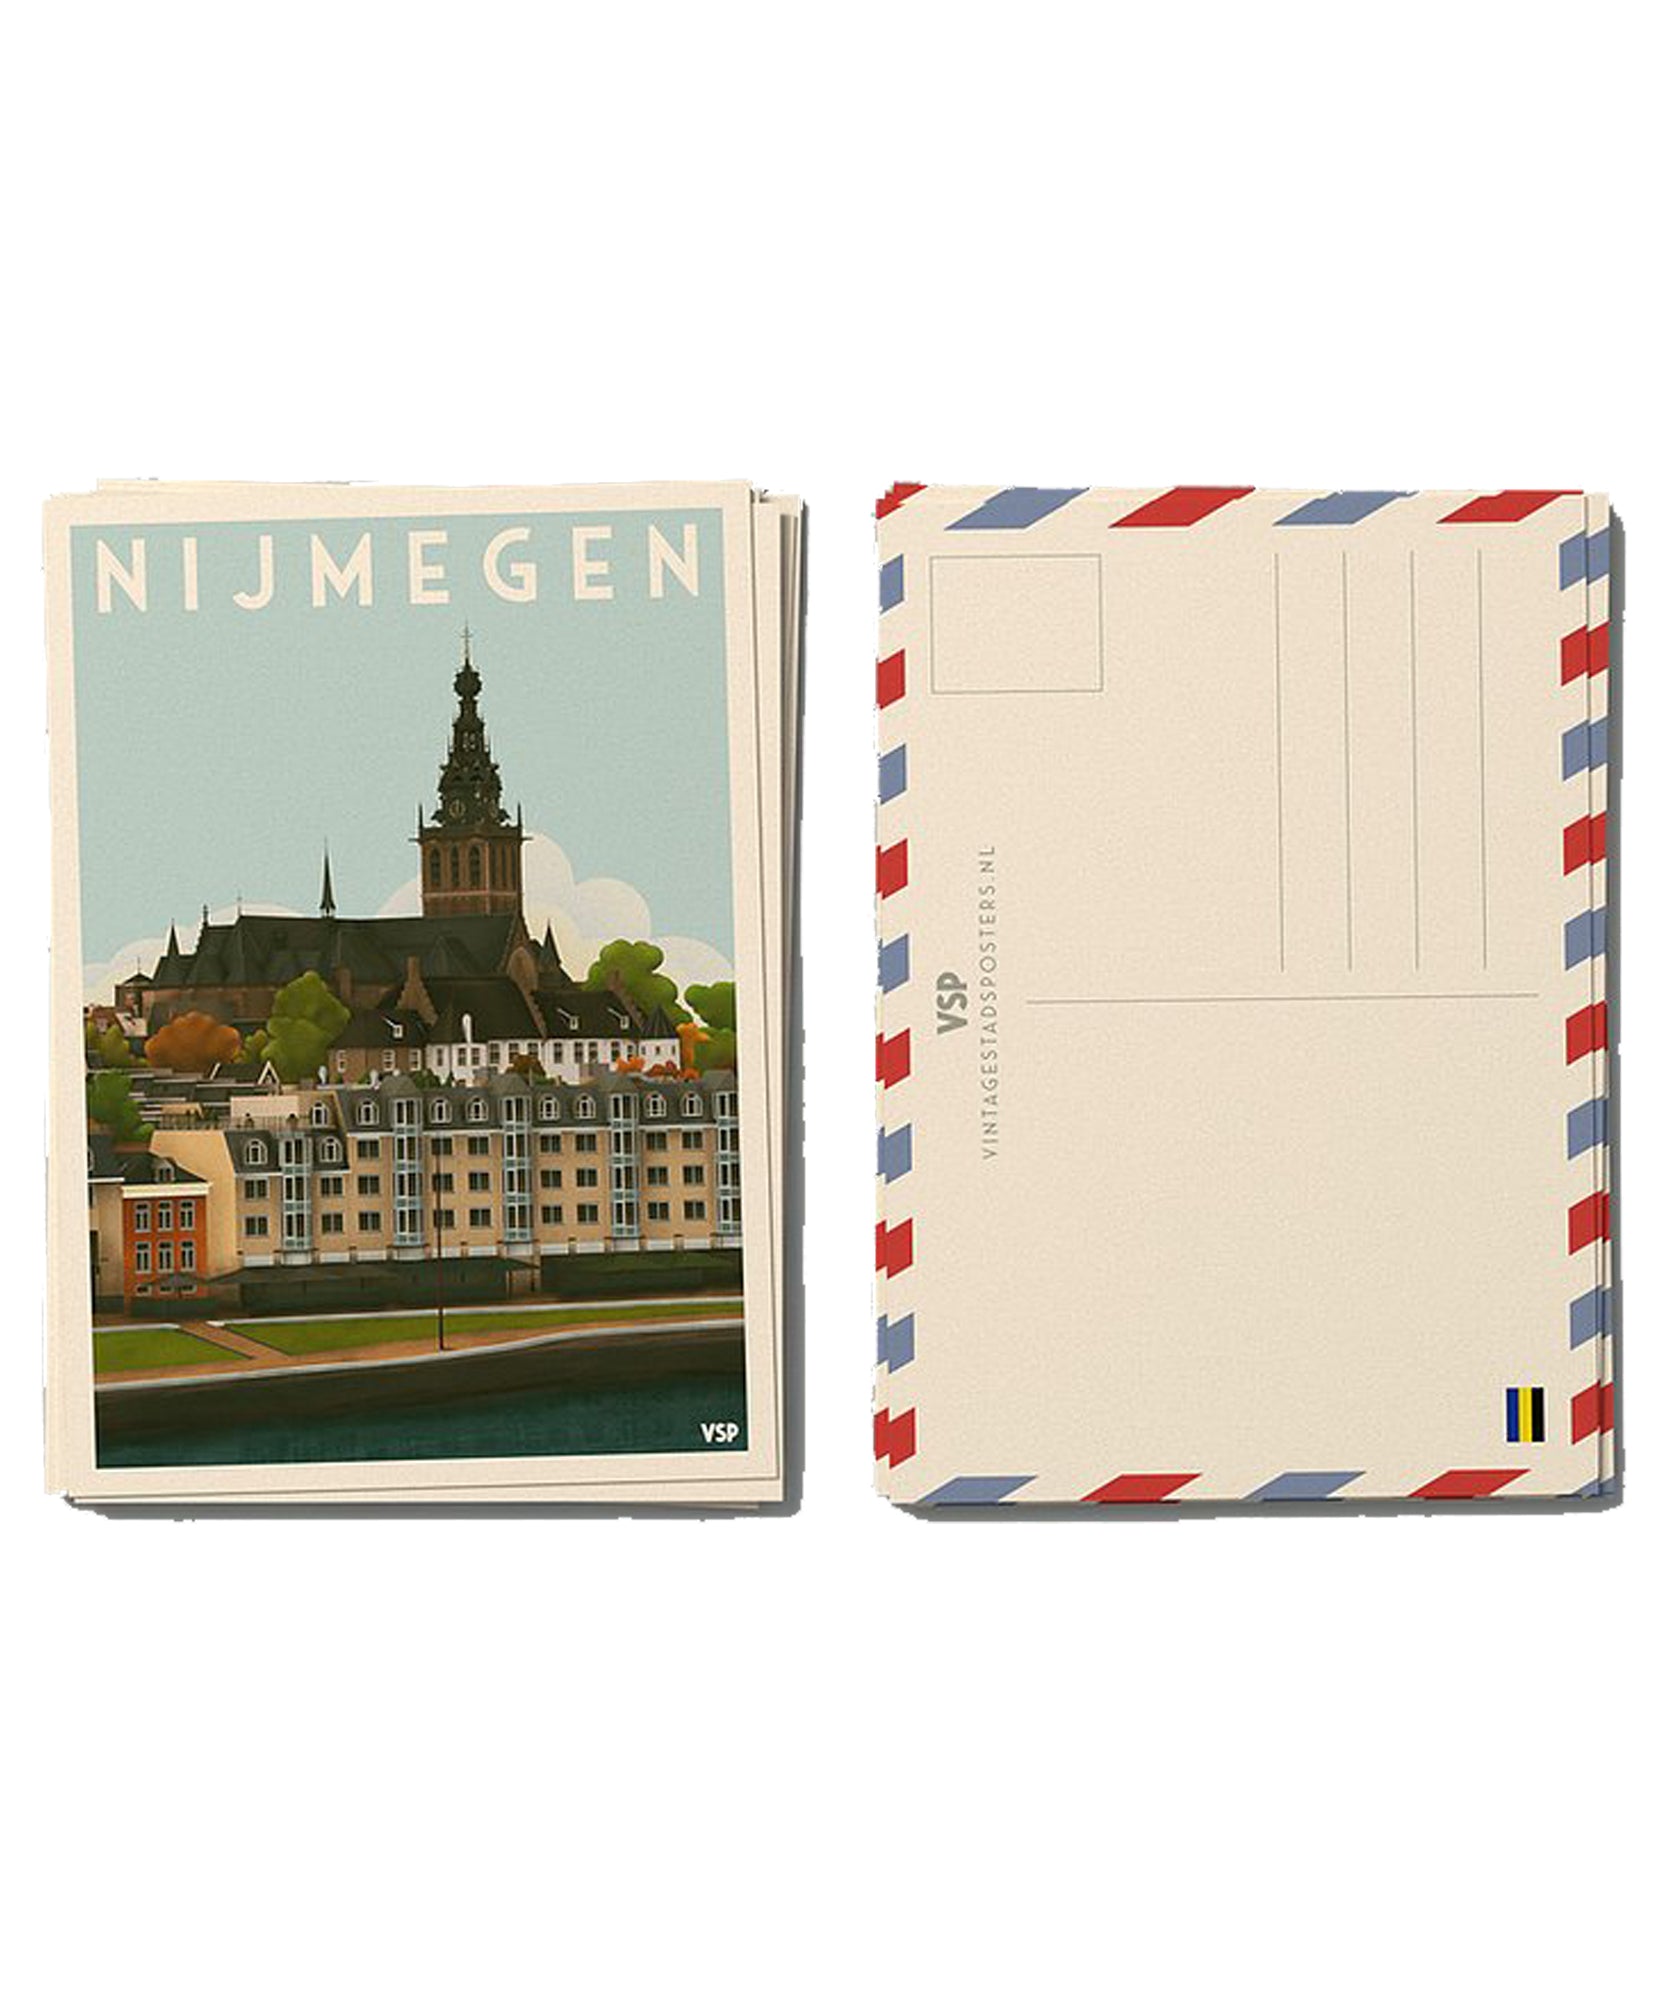 ILOVENIJMEGEN - Vintage Nijmegen